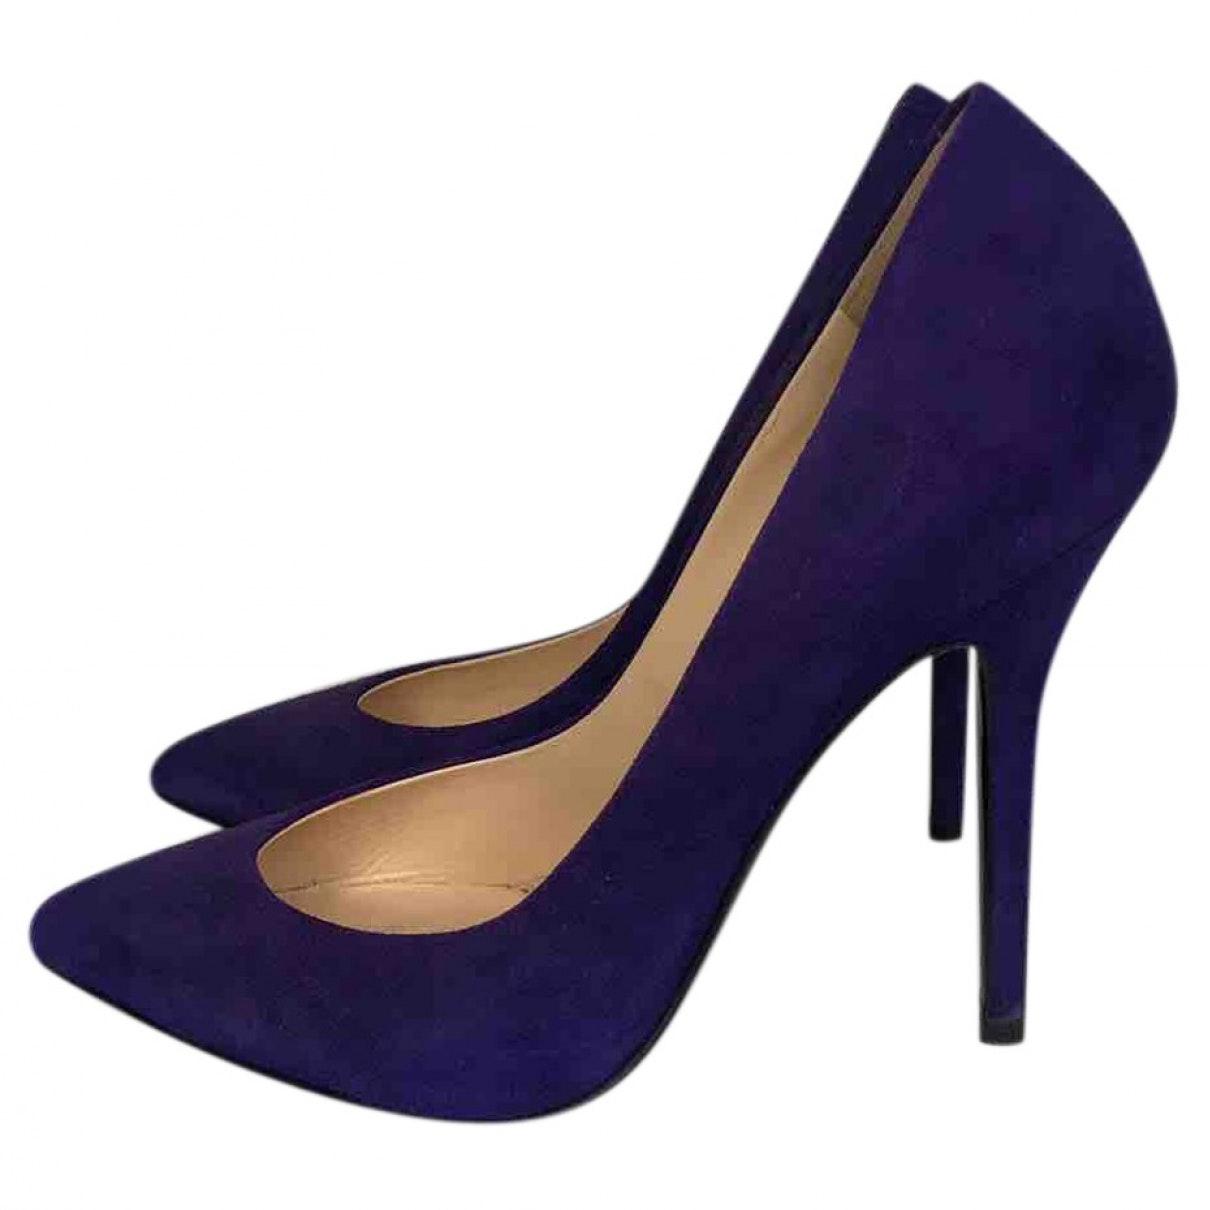 purple giuseppe heels